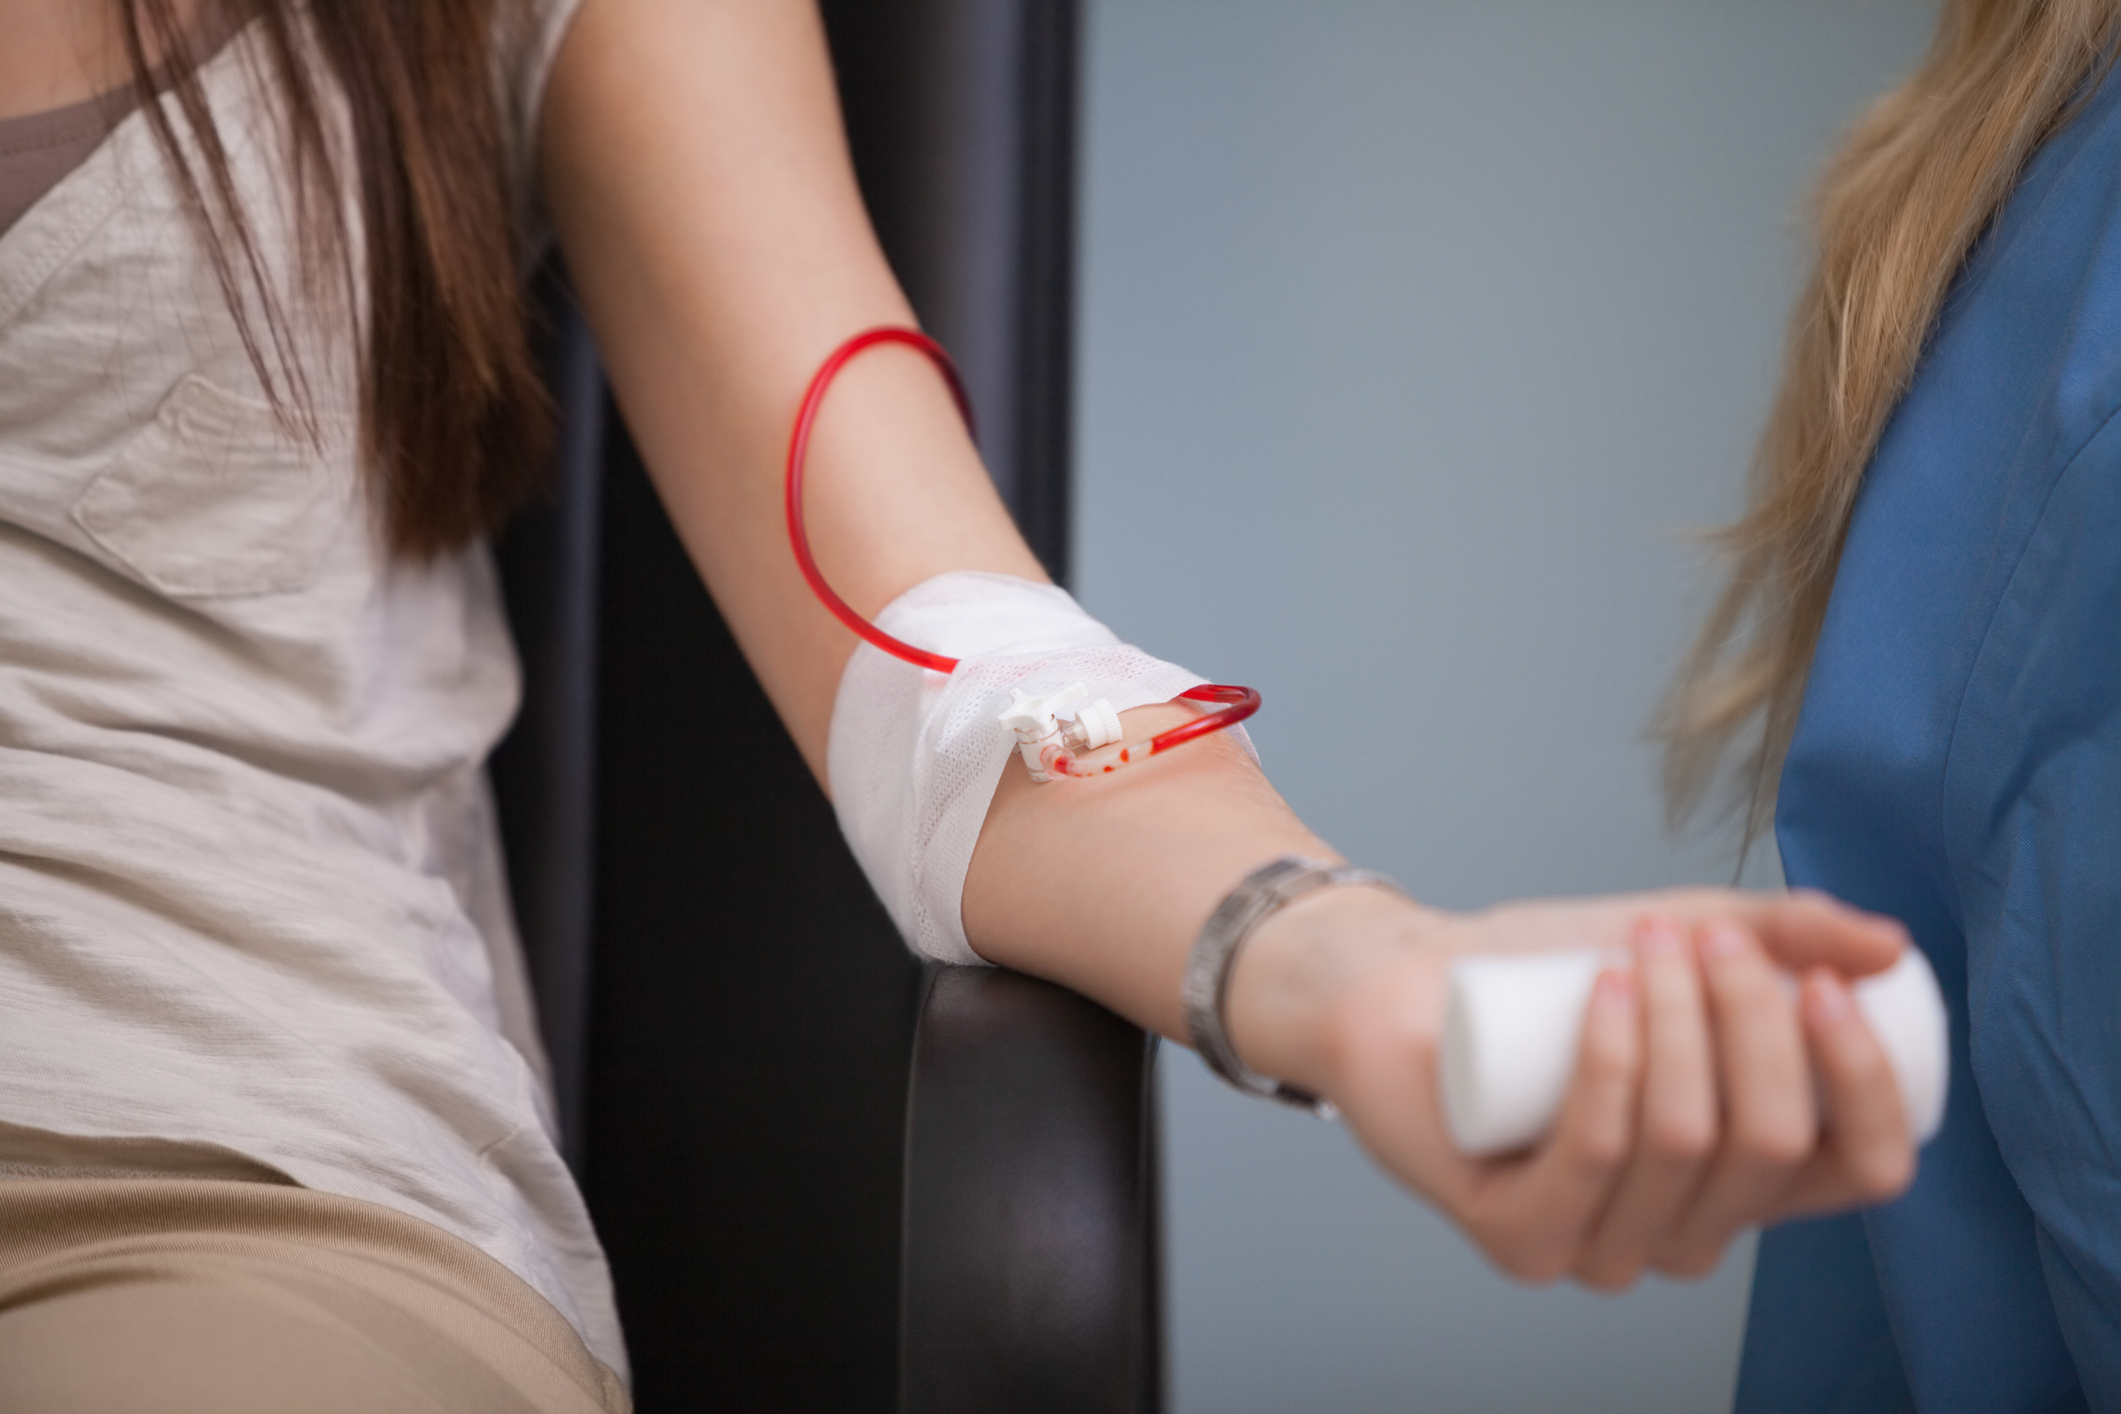   Bạn sẽ được kiểm tra sức khỏe miễn phí khi đi hiến máu nhân đạo  